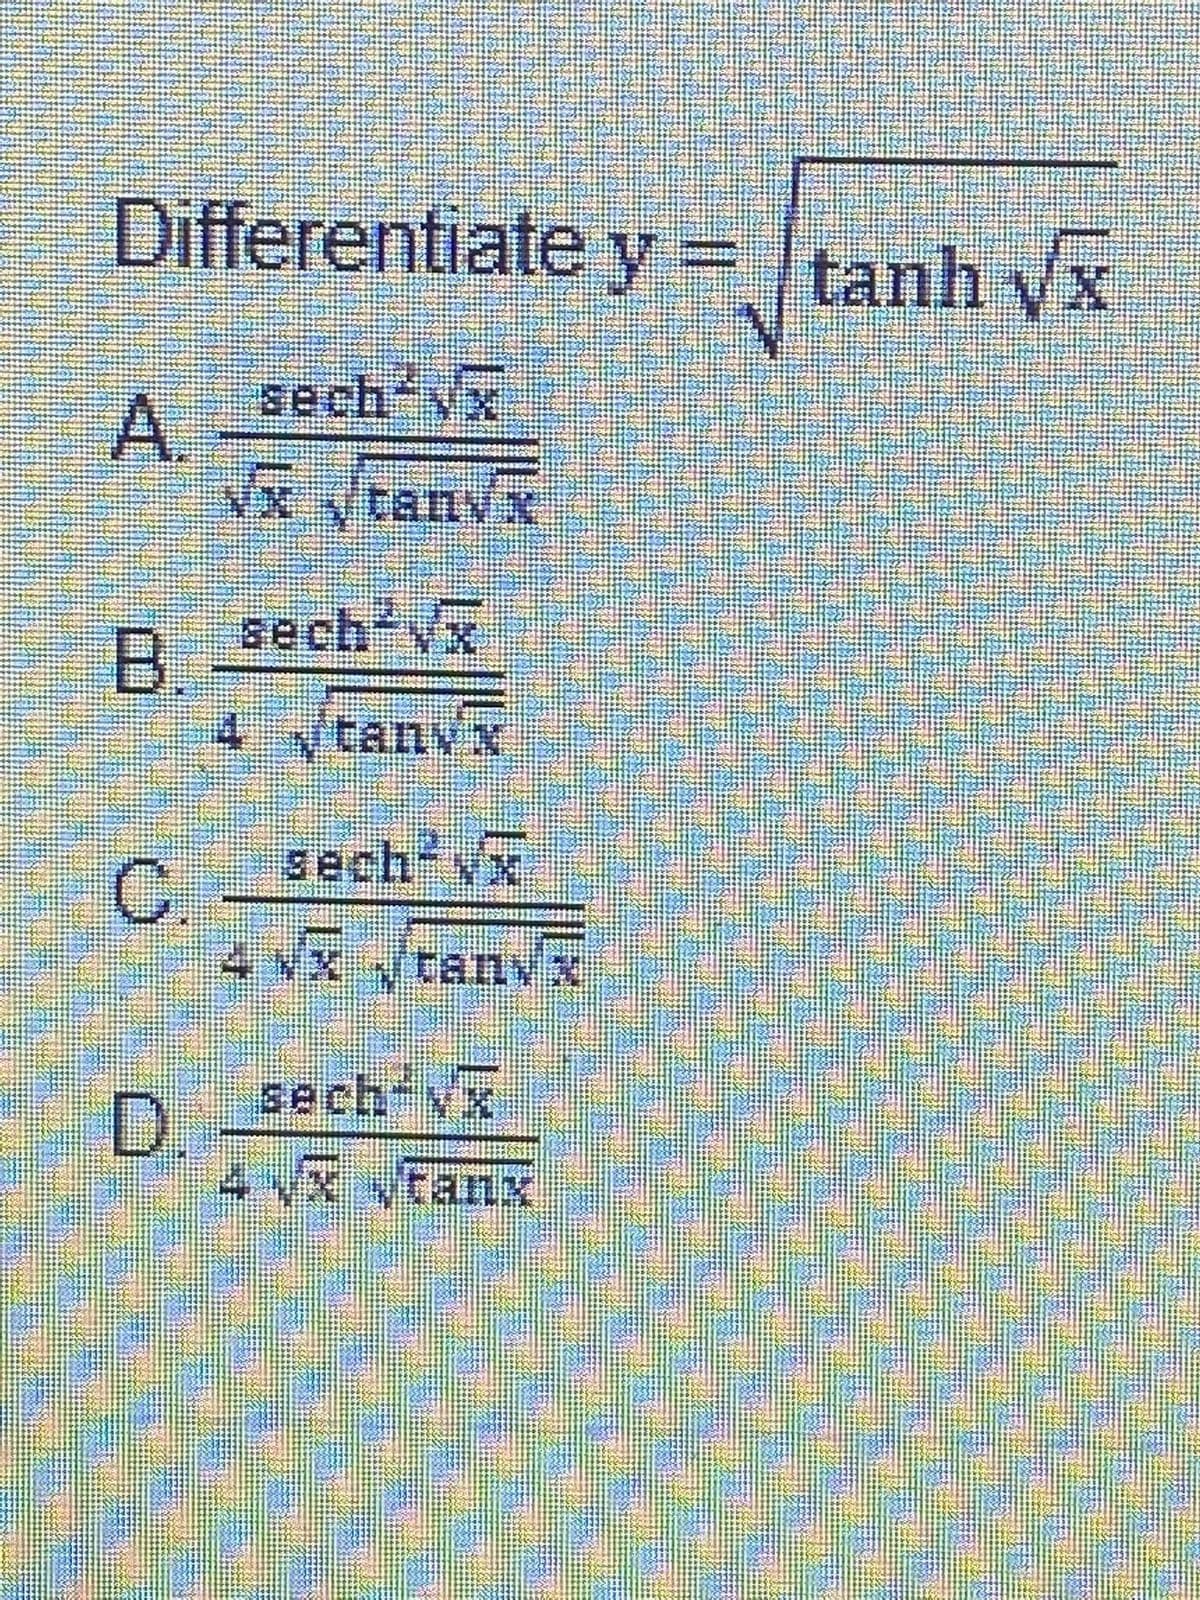 Differentiate y = tanh yx
%3D
sech-yx
A.
Vx vtanvx
sech'vx
B.
4 ytanvx
sech yx
4 Vx ytanx
sech Vx
D.
4x tanx
